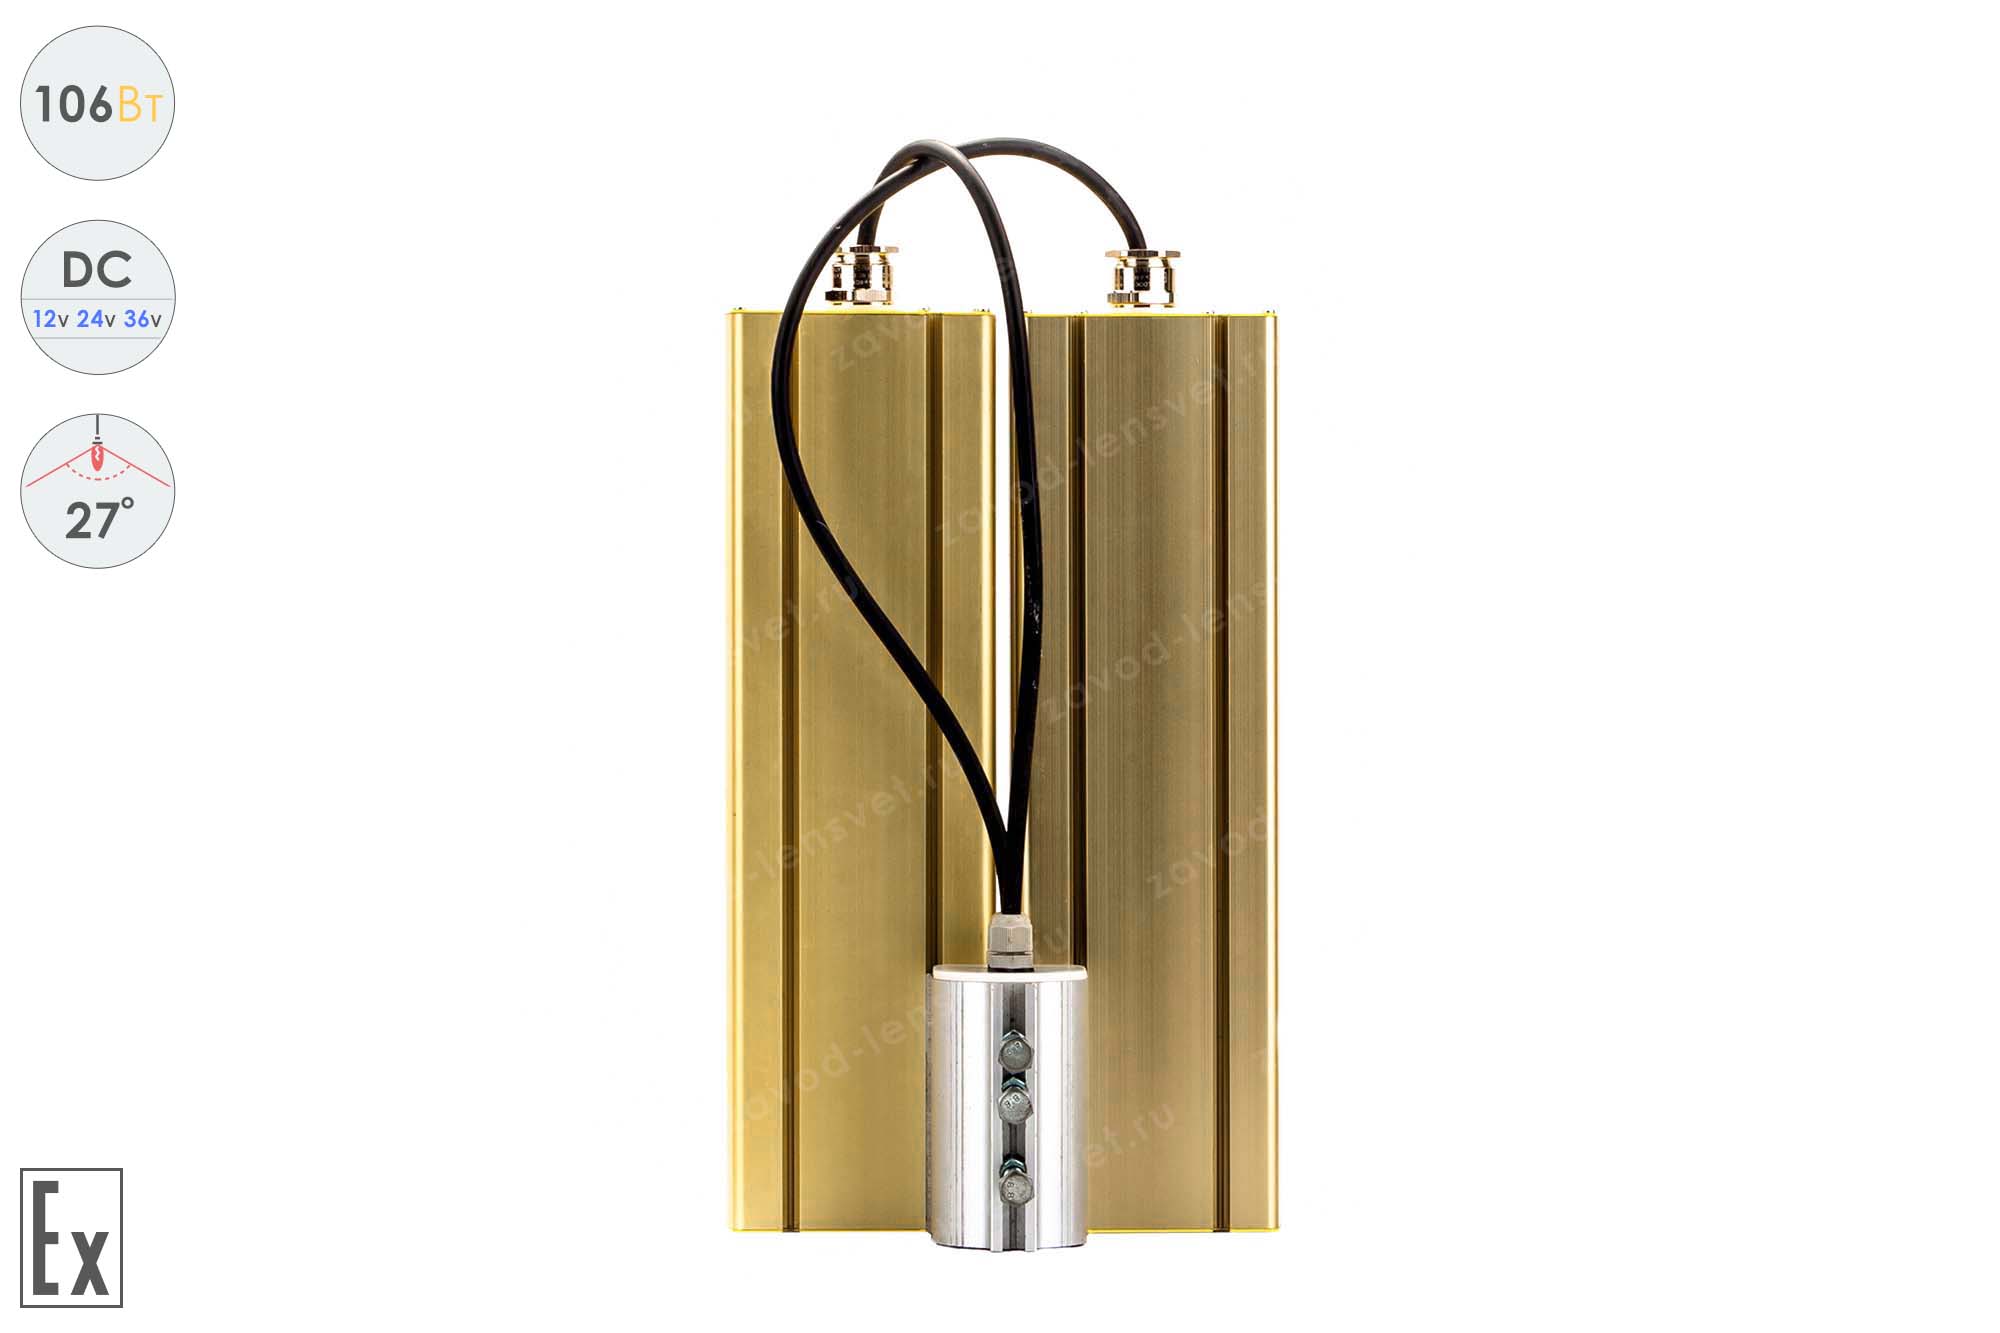 Низковольтный светодиодный светильник Прожектор Взрывозащищенный GOLD, консоль K-2 , 106 Вт, 27°